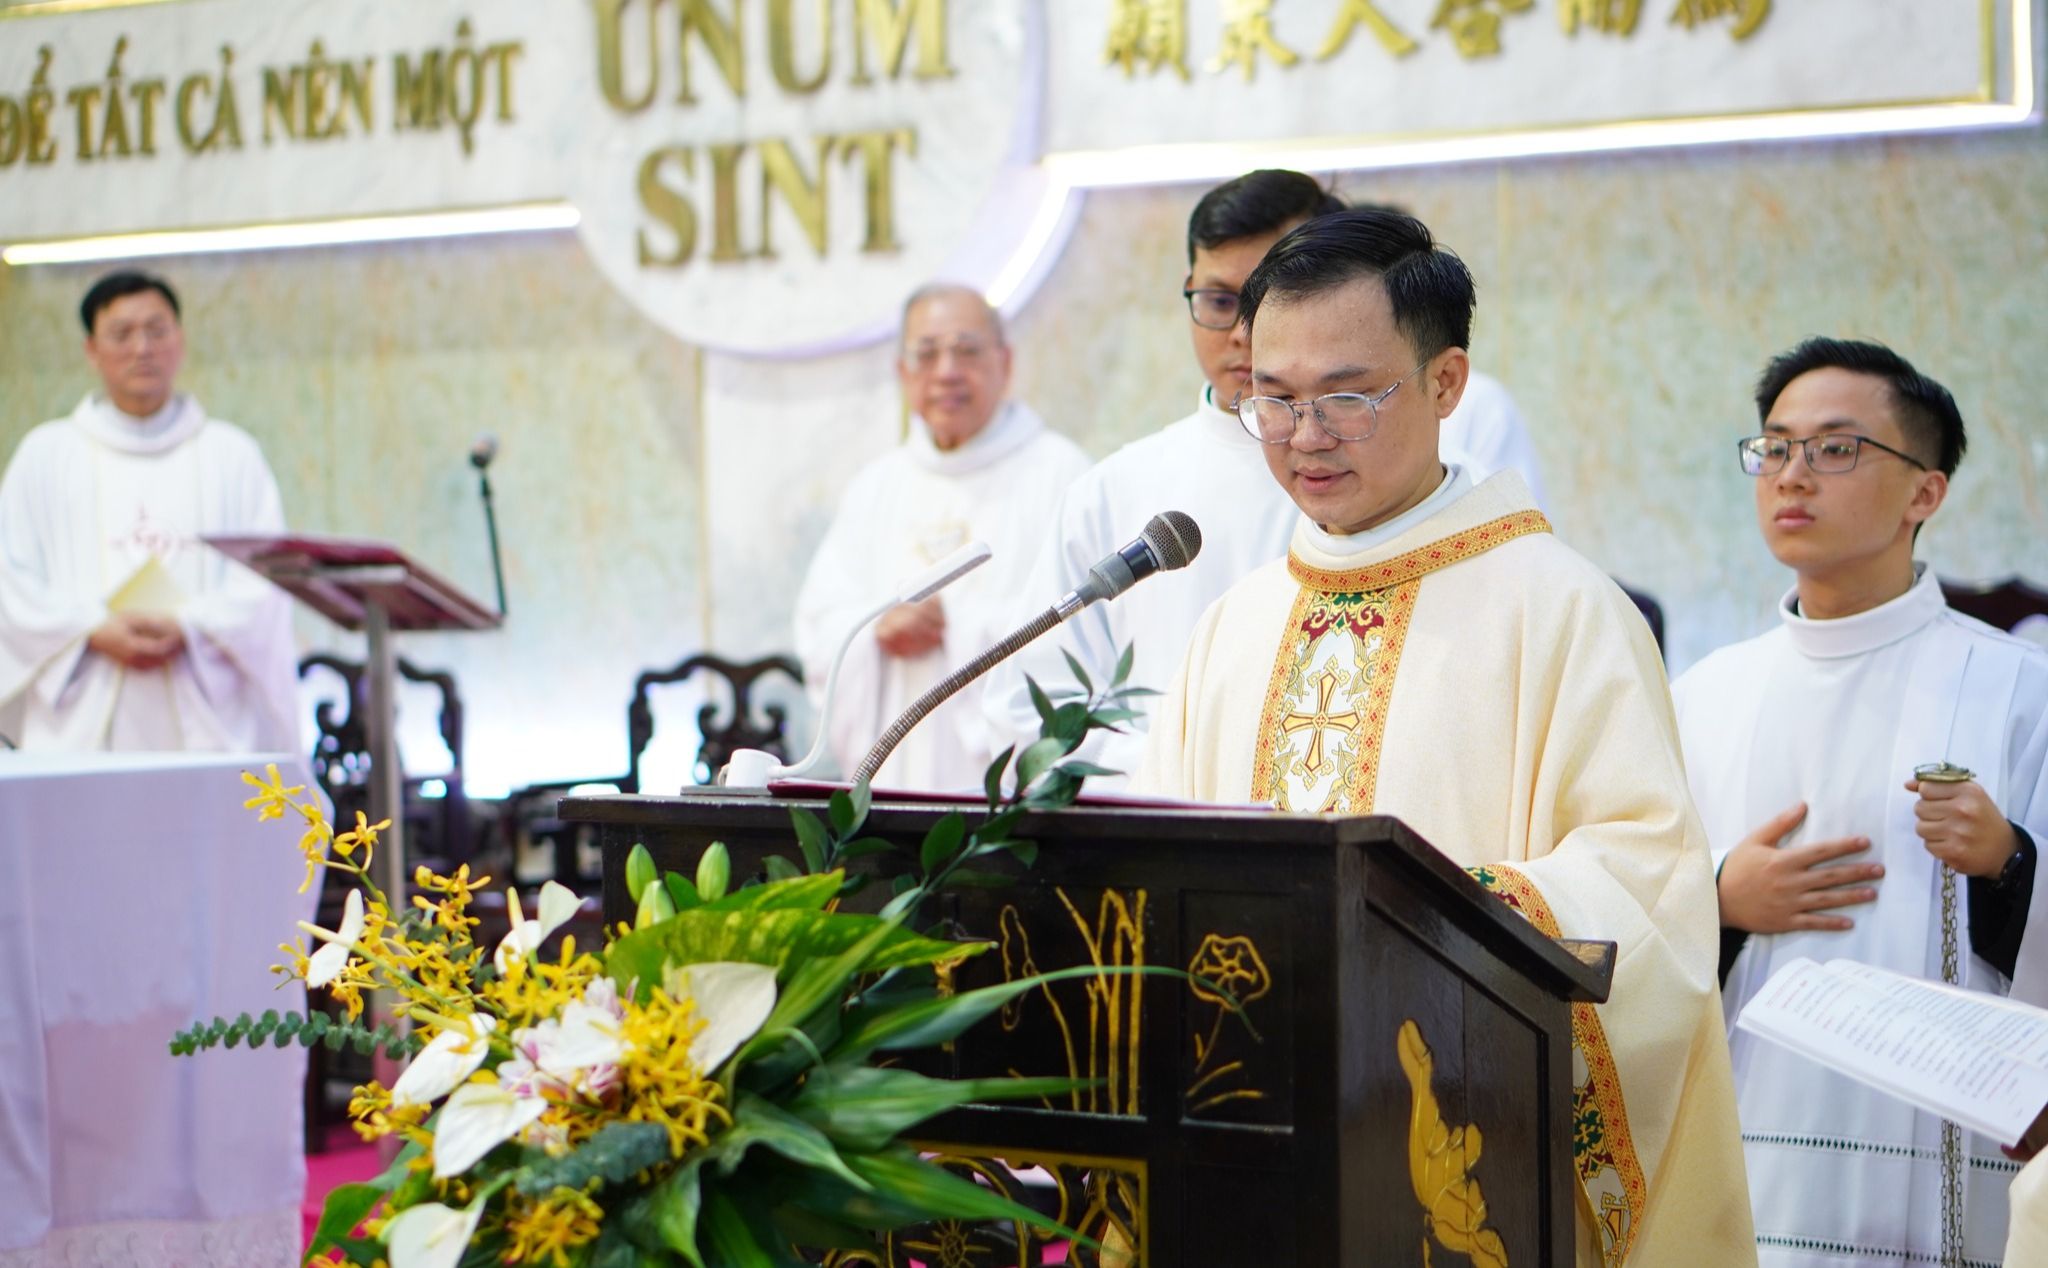 phailamgi_Thánh lễ tạ ơn của Tân Linh mục người Hoa tại TGP Sài Gòn_cv2.jpg